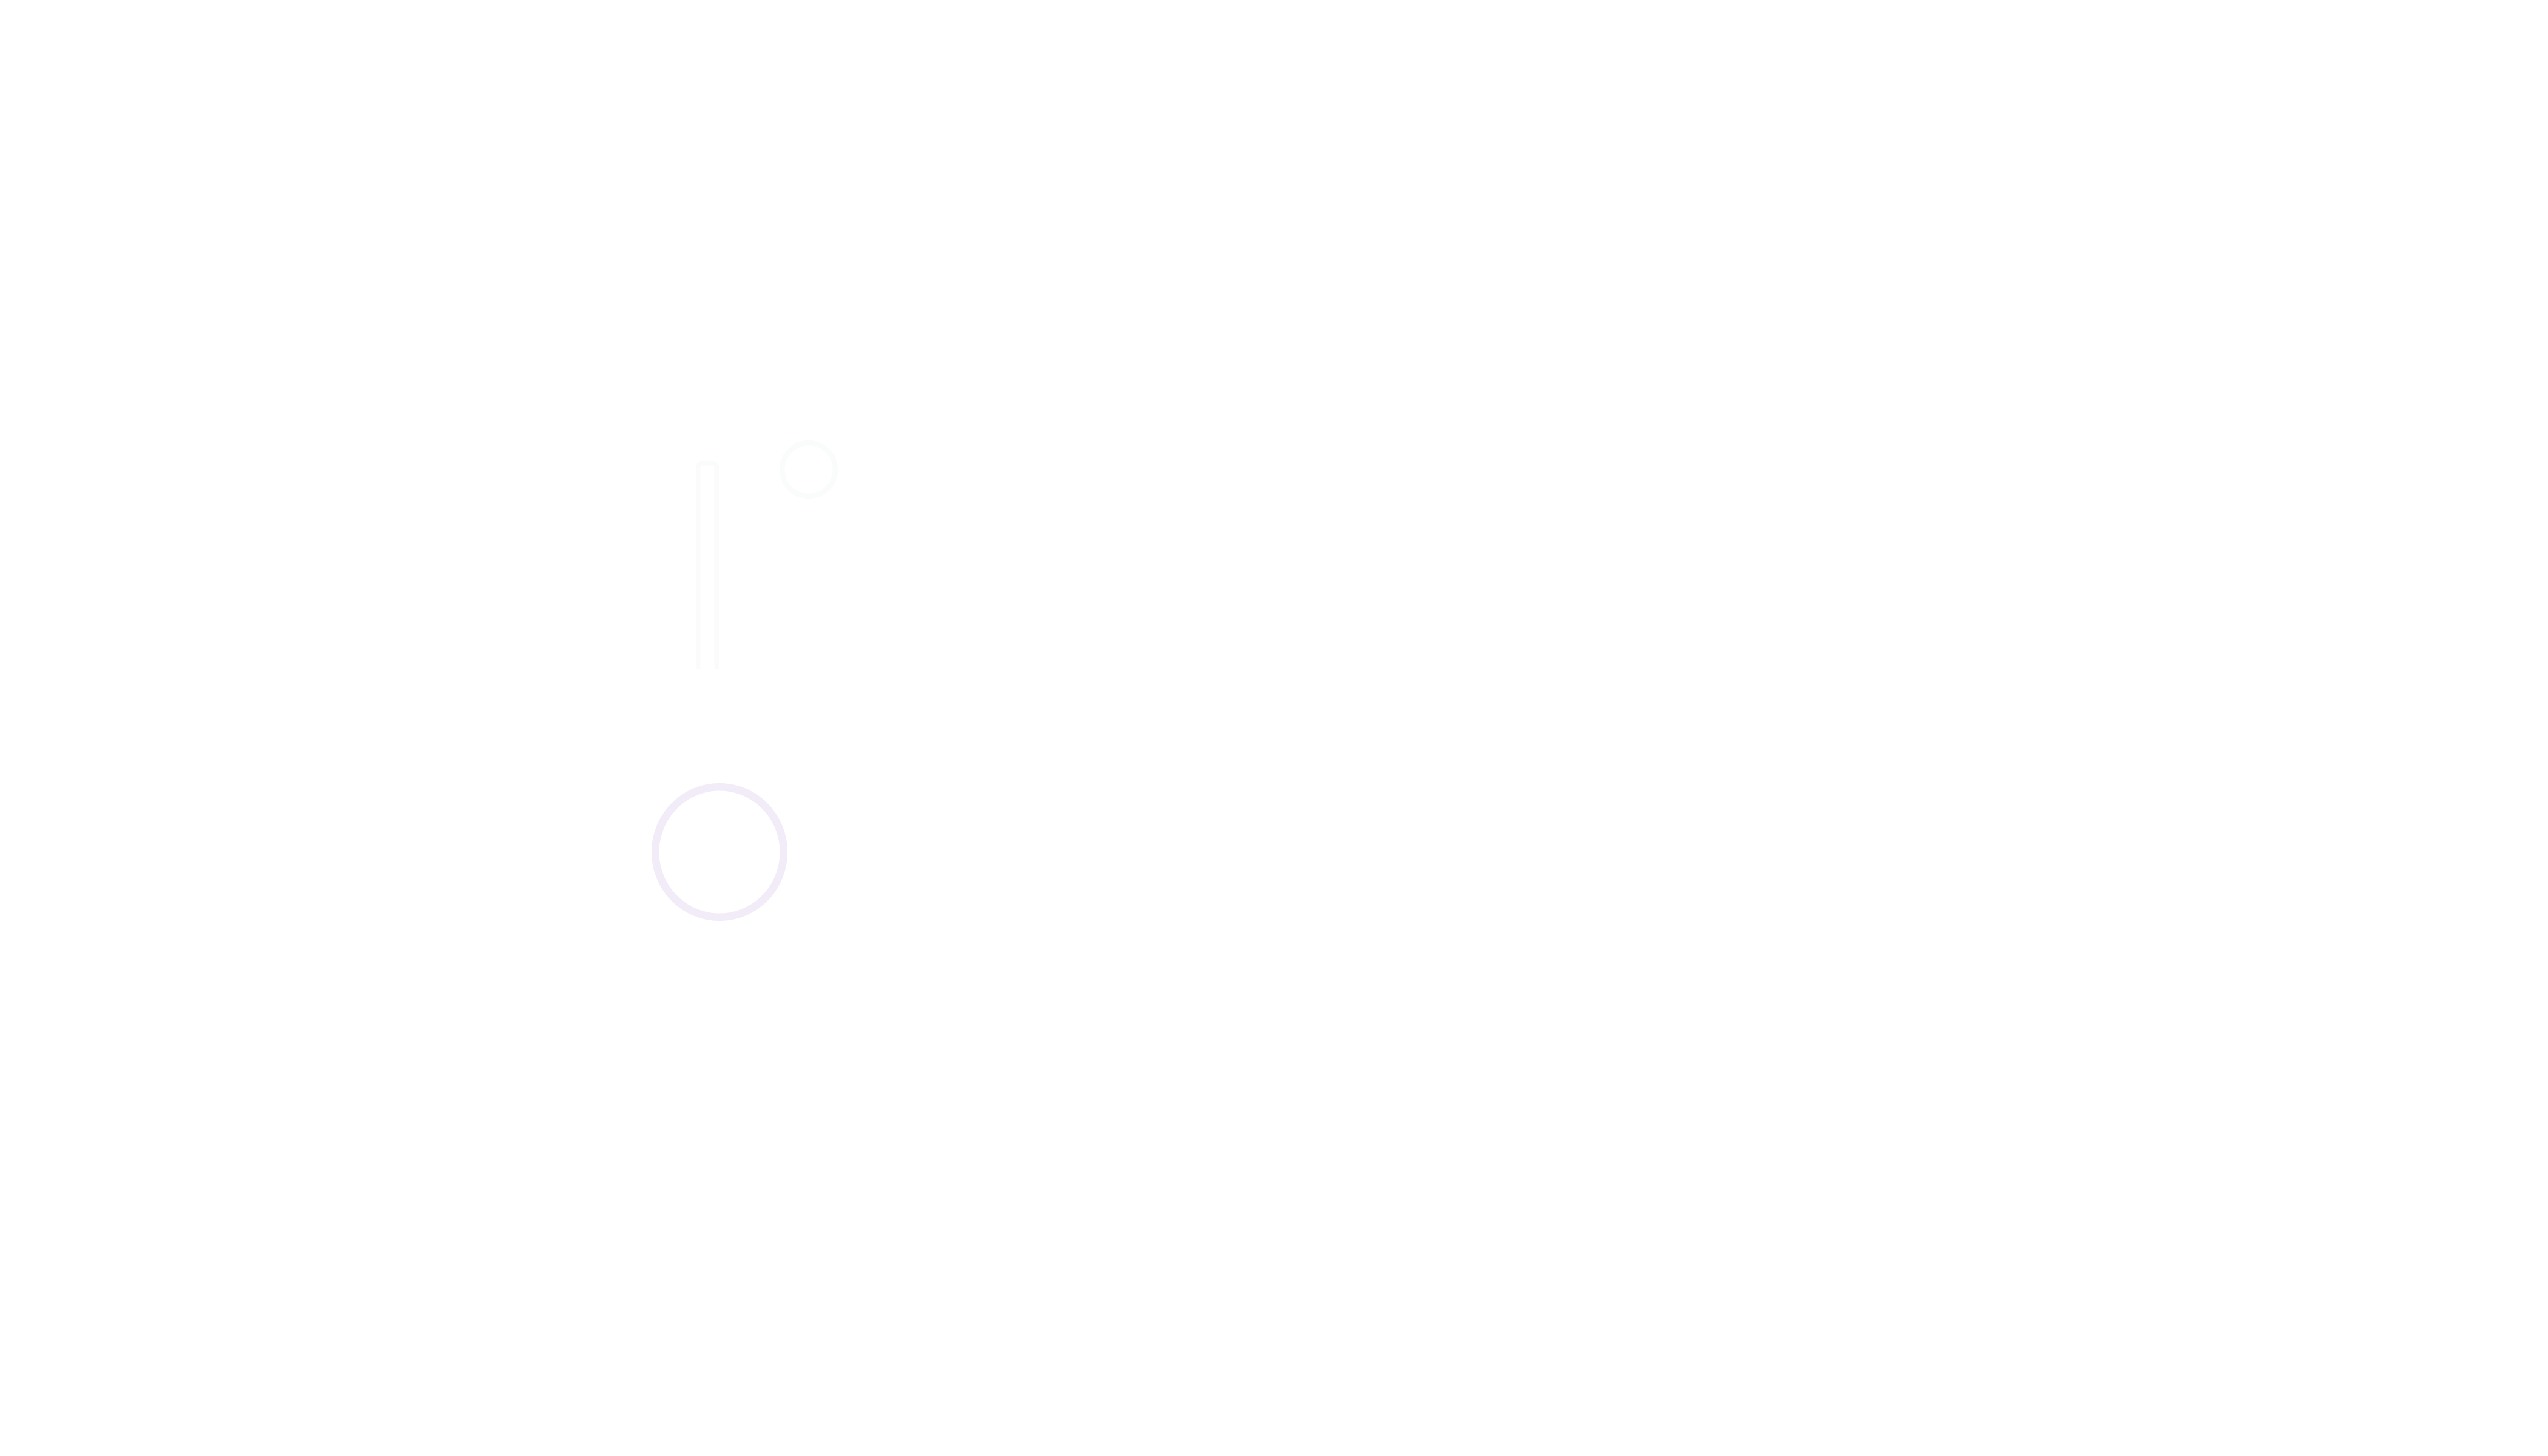 Peanut Galleries